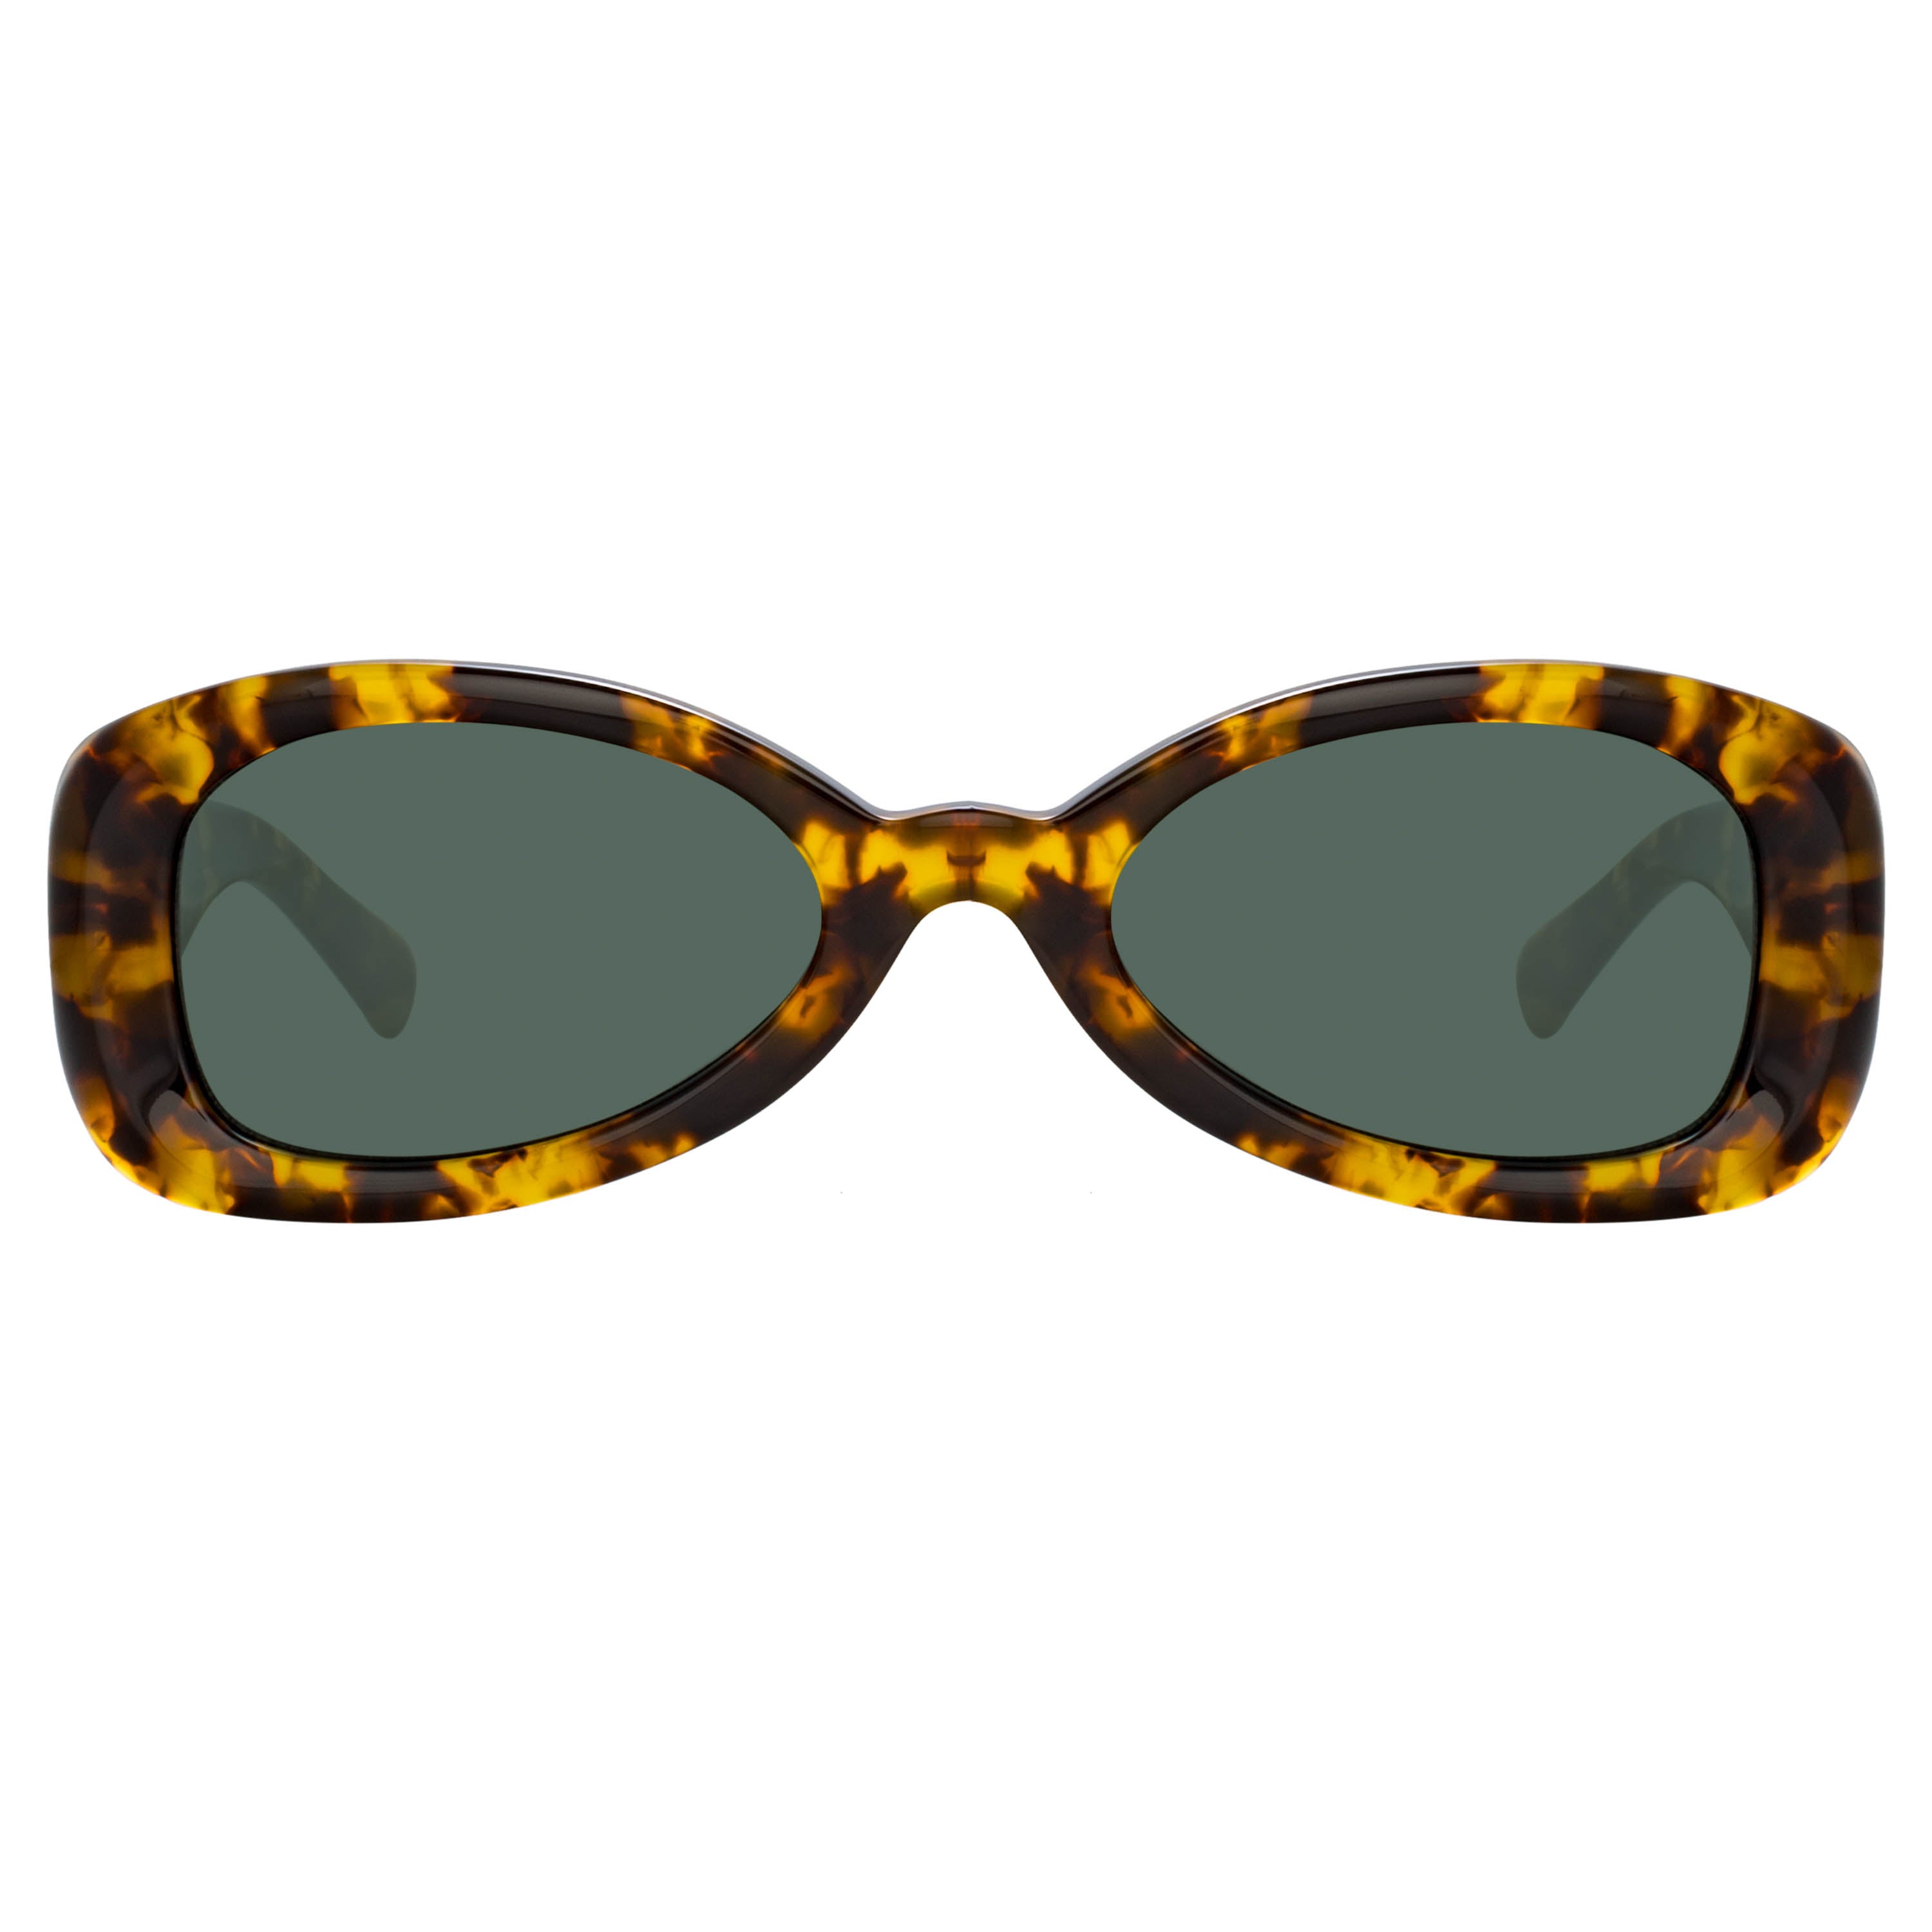 Dries van Noten 204 Aviator Sunglasses in Tortoiseshell